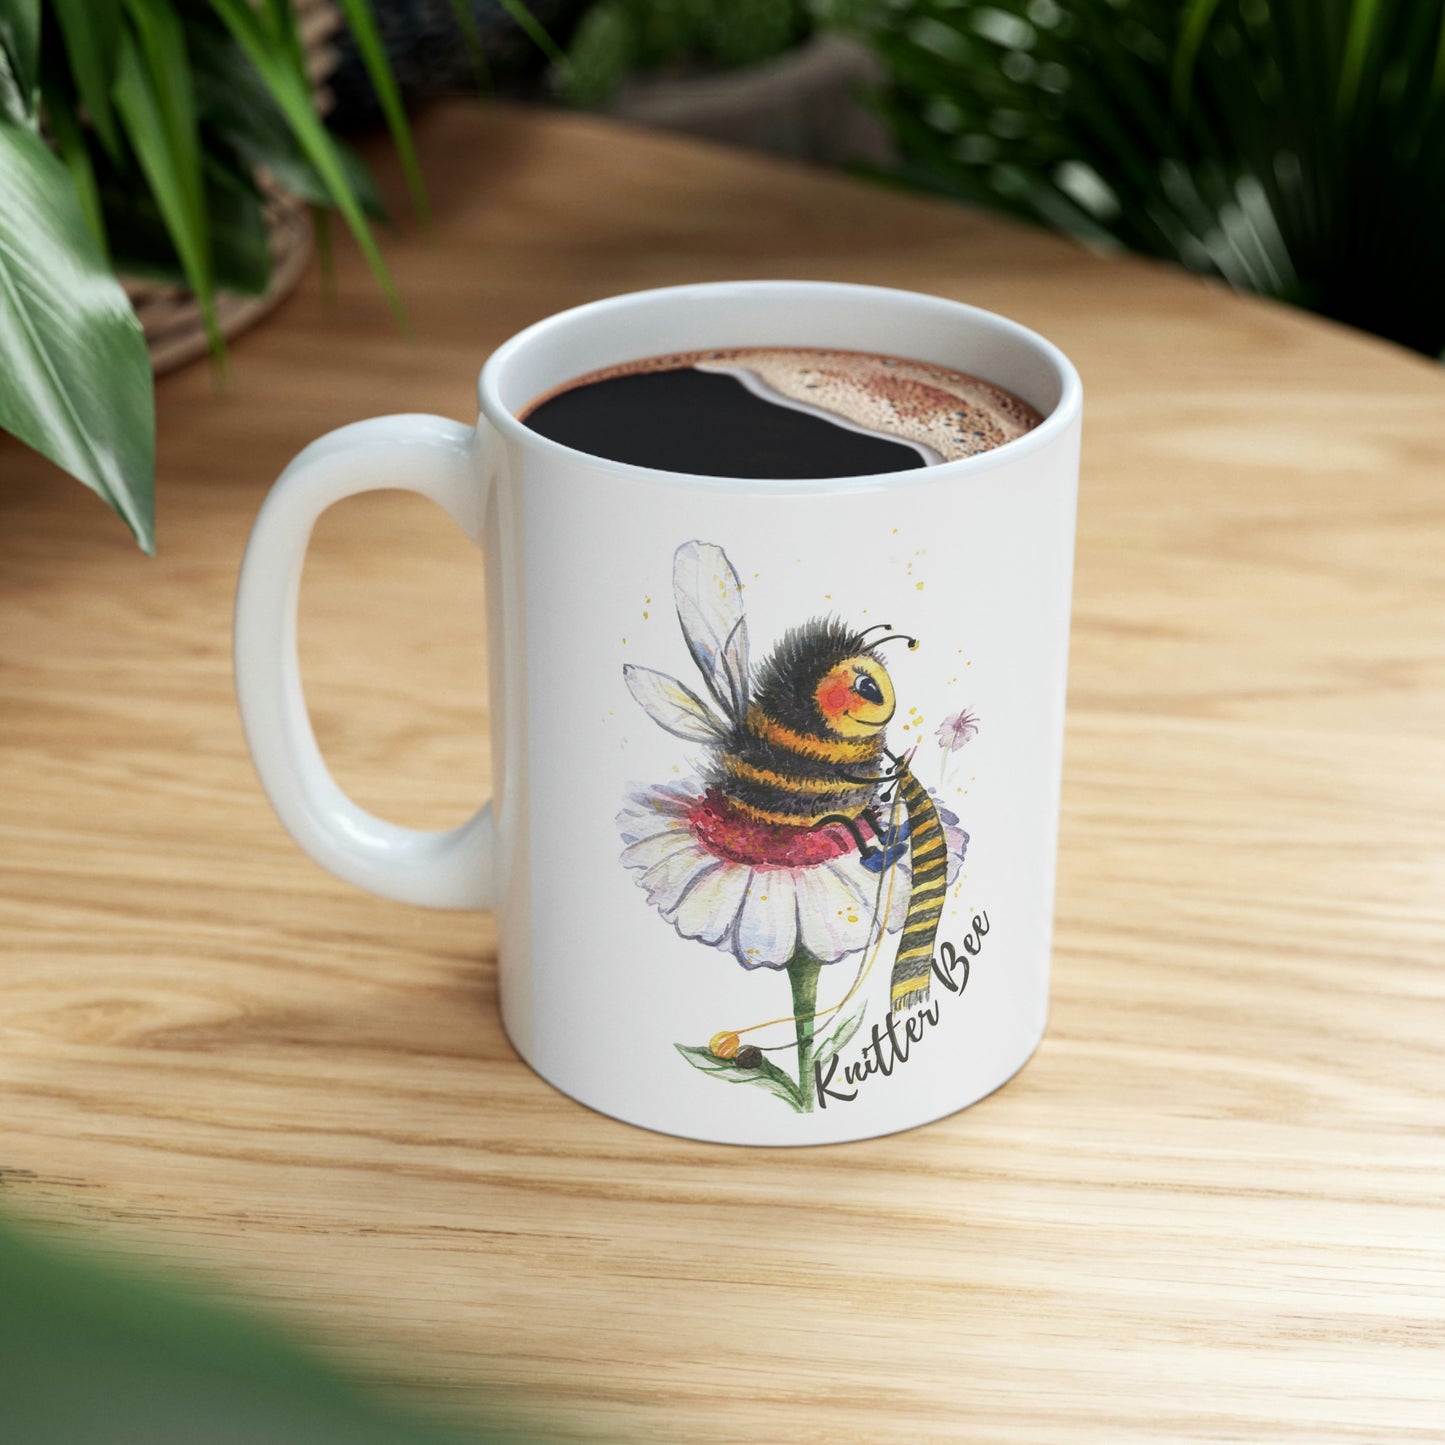 Knitter Bee Coffee Mug